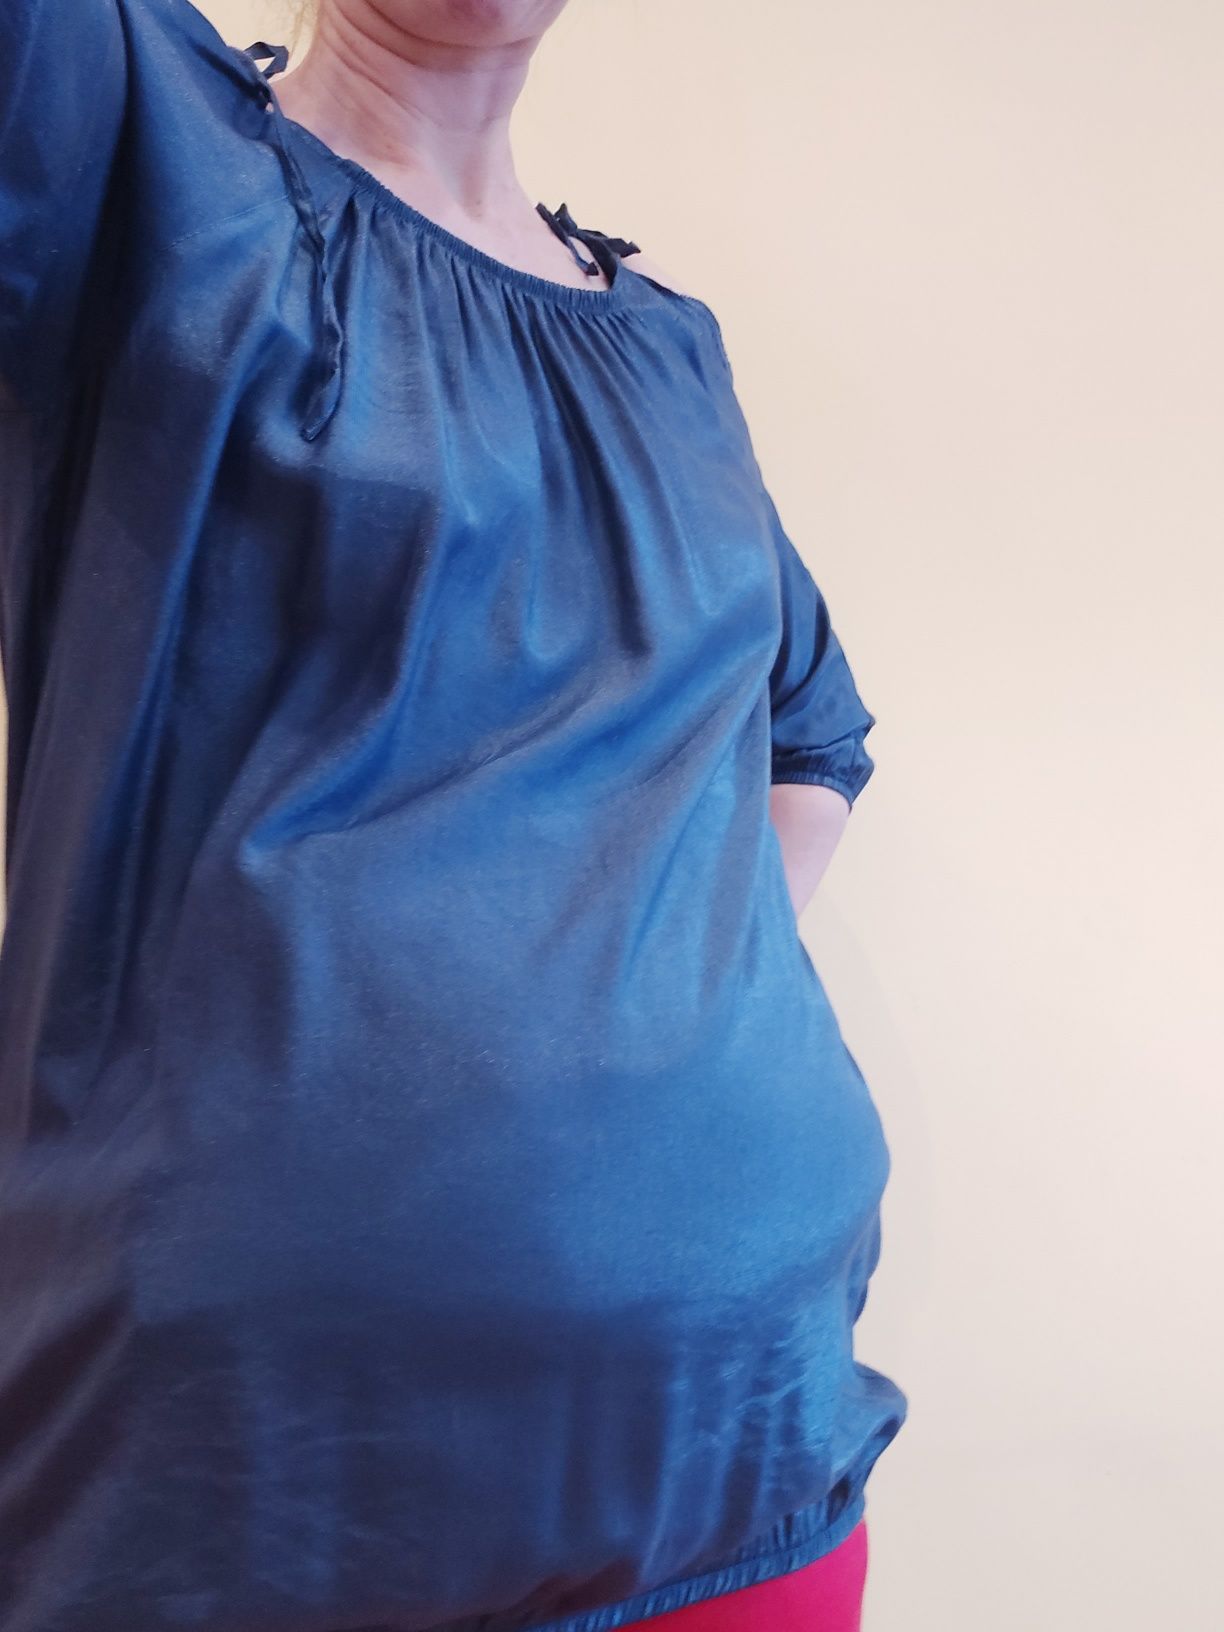 Bluzka ciążowa, rozmiar M / L, kolor granatowy z delikatnym połyskiem.